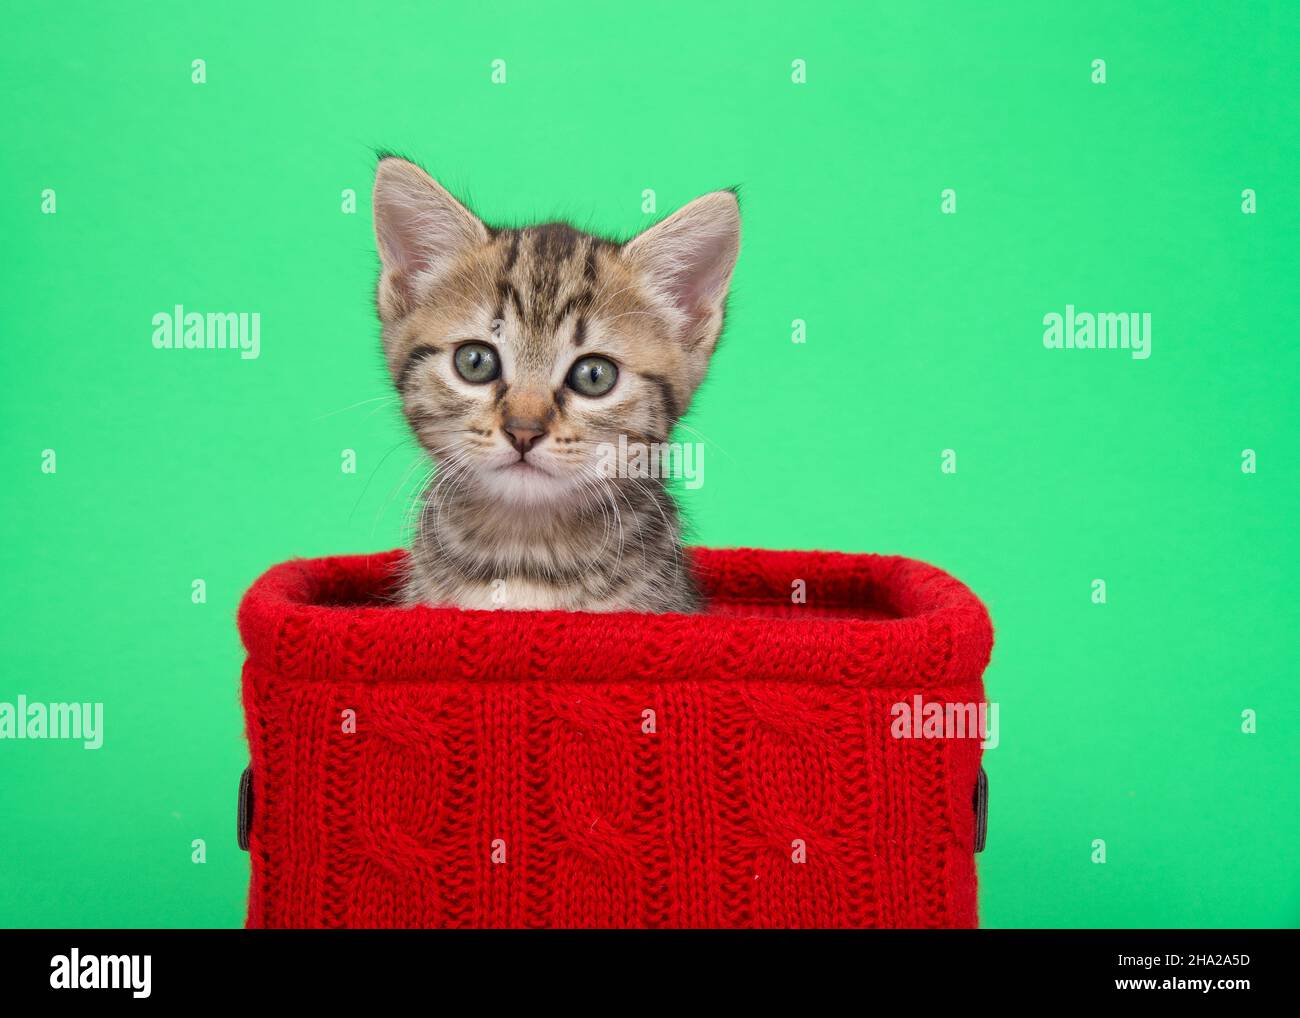 Ritratto di un adorabile tabby bengala mix gitten che sbuccia da un cestino di maglia rossa su sfondo verde. Kitty guardando direttamente lo spettatore con curioso Foto Stock